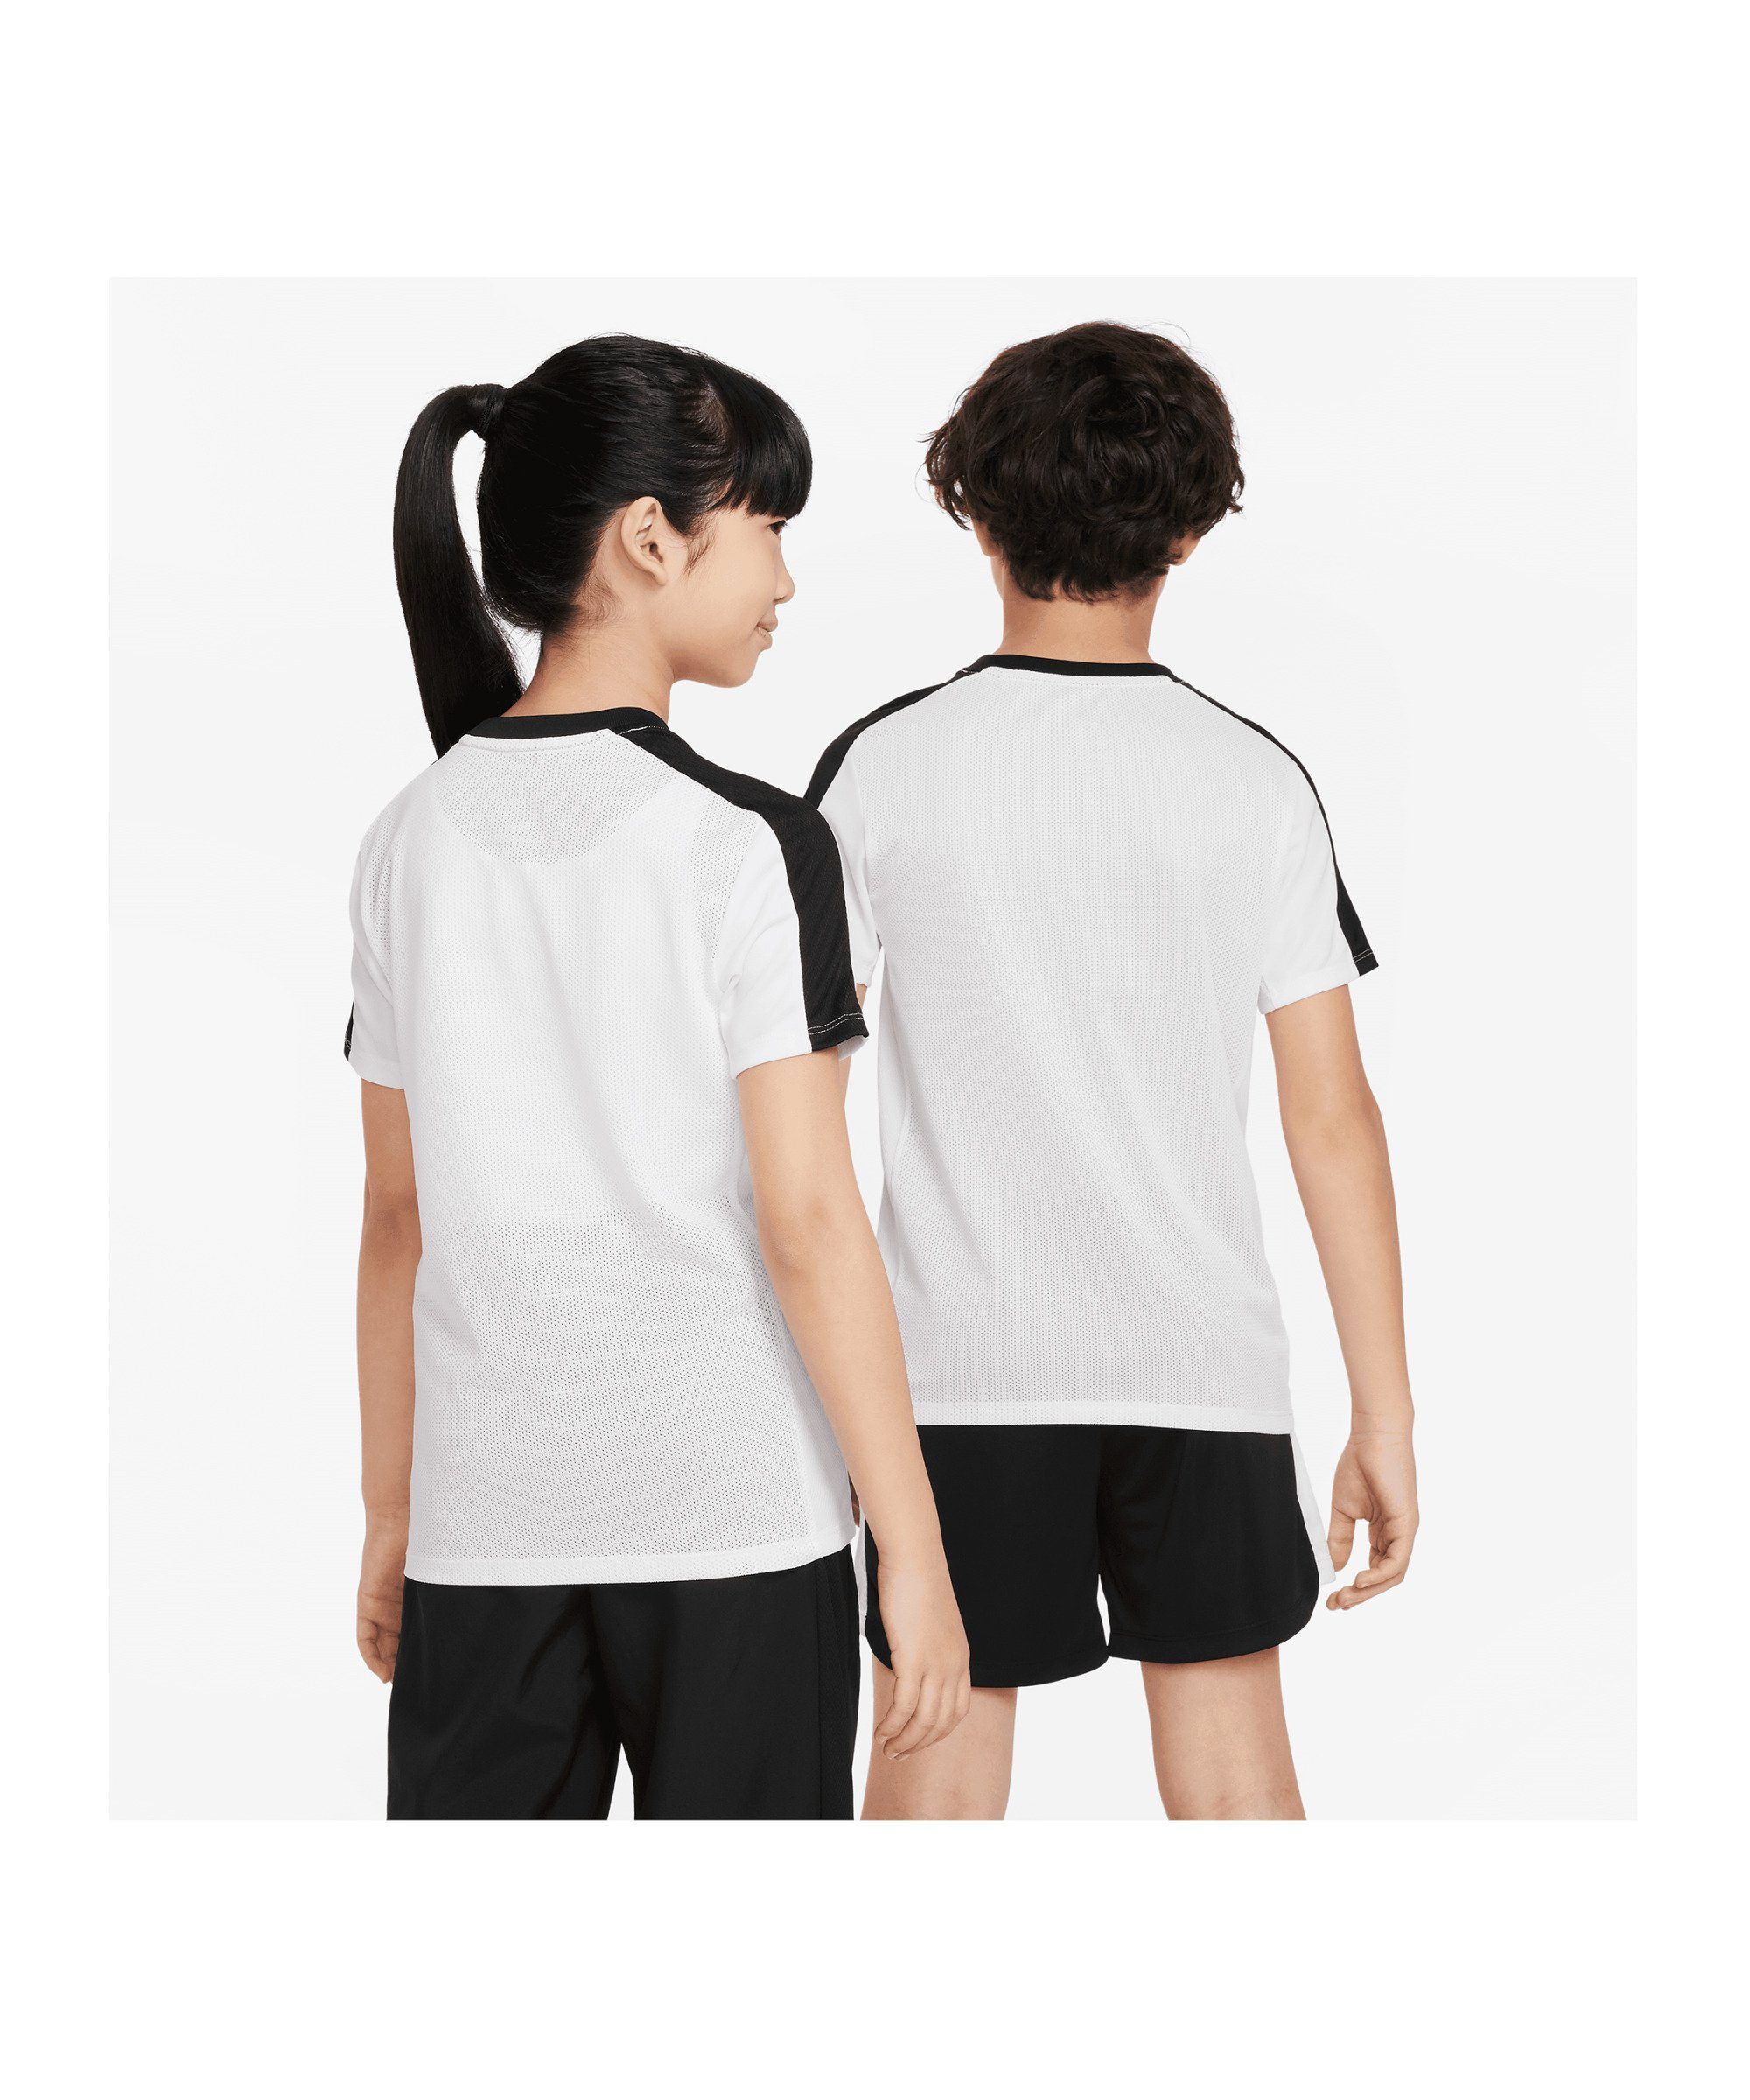 Academy default weissschwarzrot T-Shirt Nike T-Shirt 23